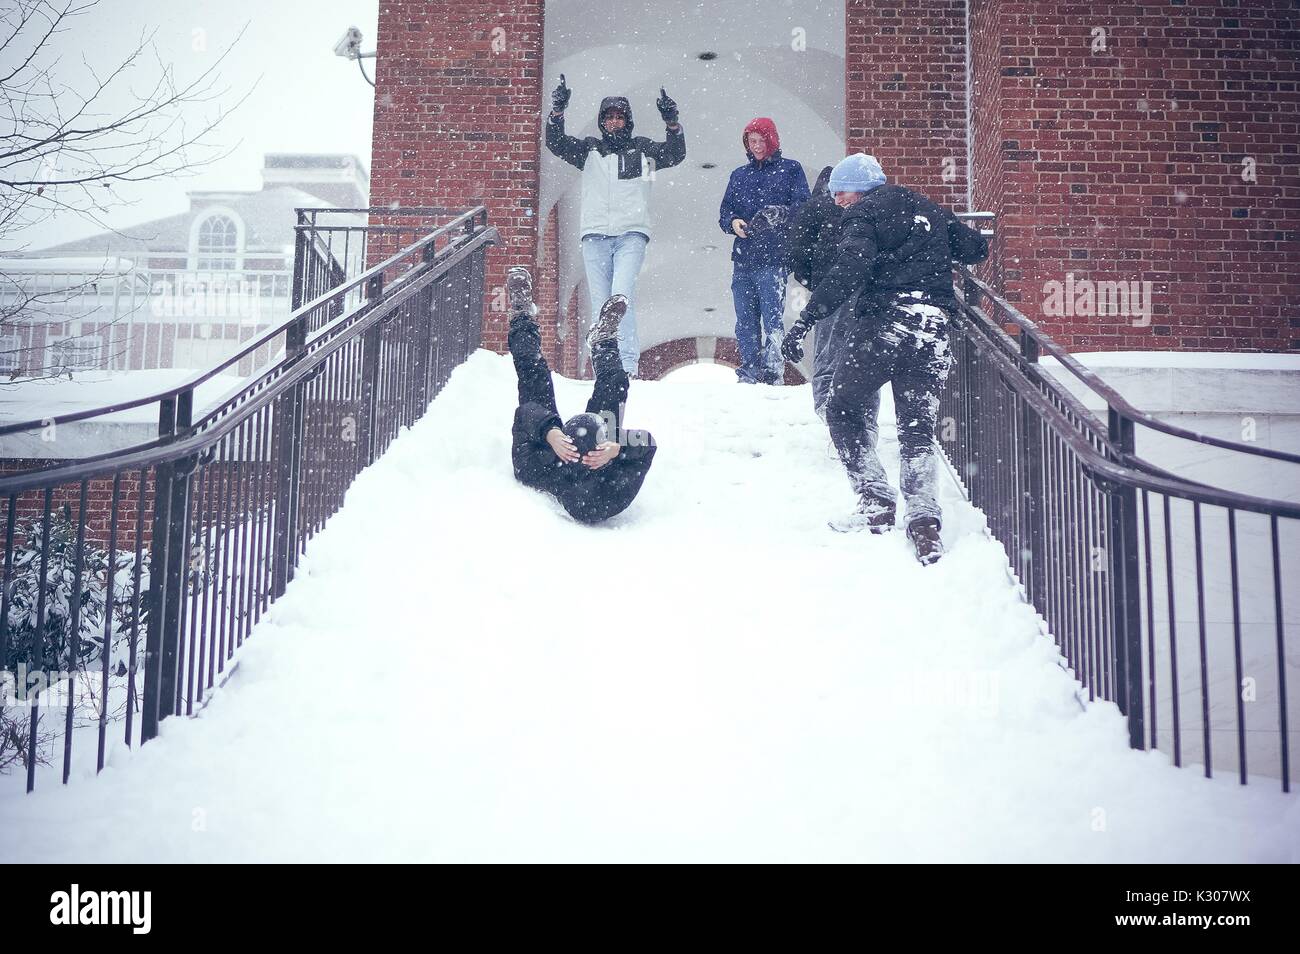 Ein Student Rutschen rückwärts mit Beinen in der Luft und die Arme um seinen Kopf, unten eine verschneite Treppe, während Freunde im Schnee gang Beifall von oben an der Treppe, während einer Snow Day an der Johns Hopkins University, Baltimore, Maryland, 2016. Stockfoto